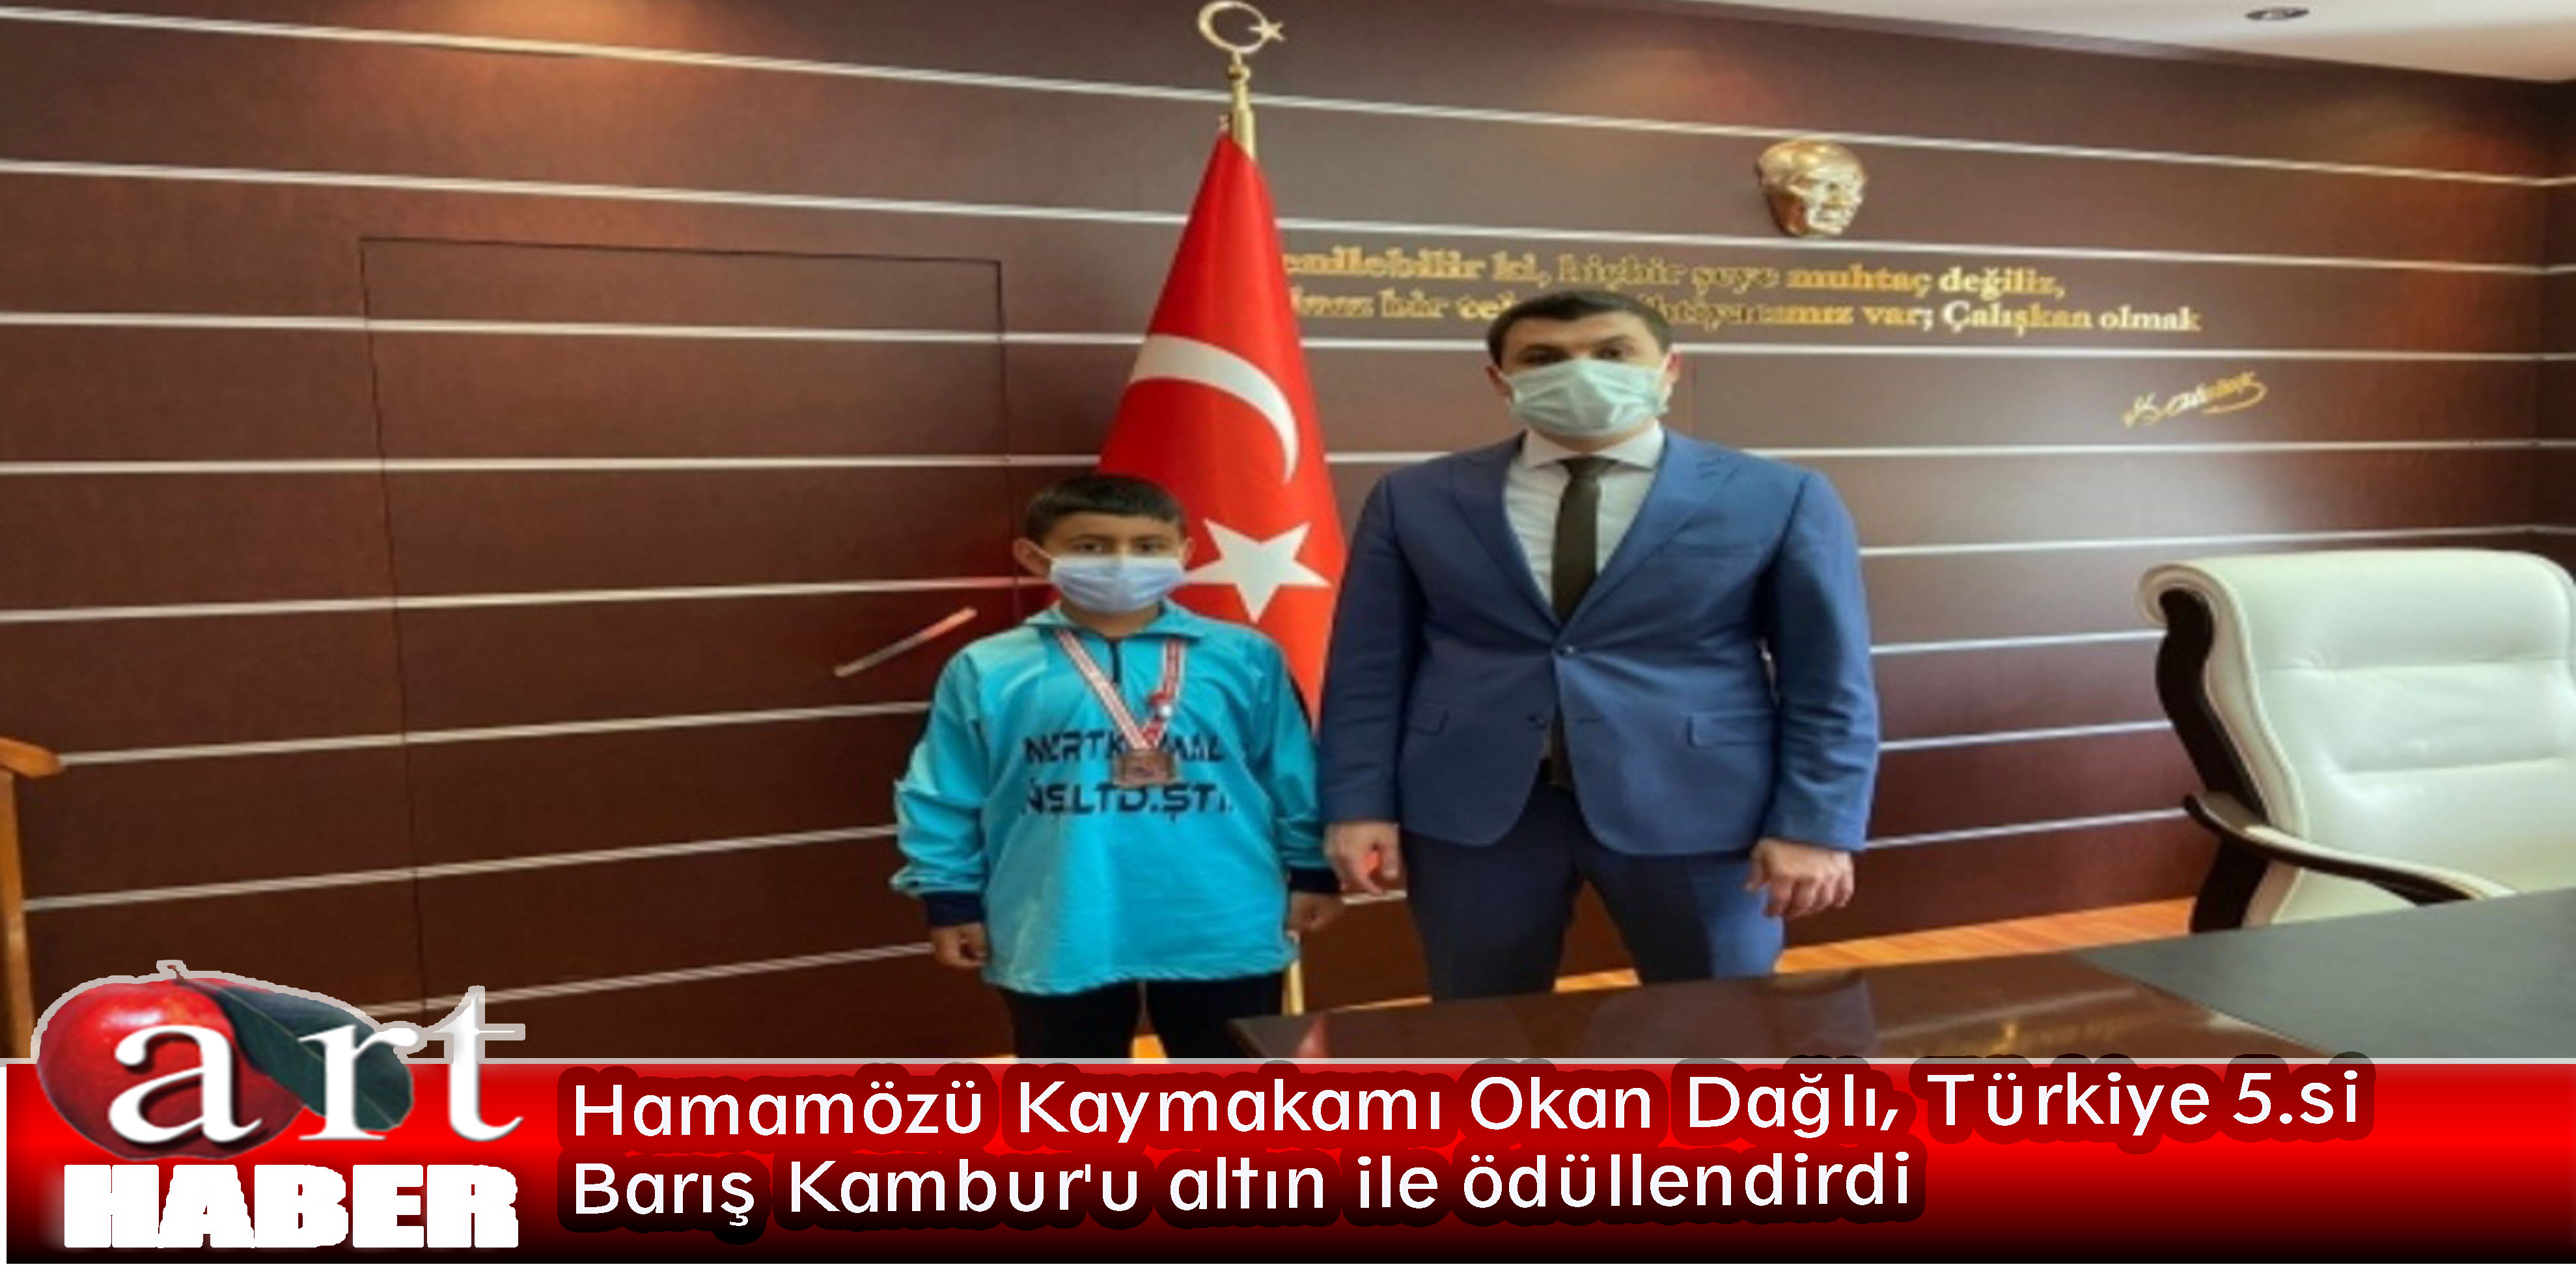 Hamamözü Kaymakamı Okan Dağlı, Türkiye 5.si Barış Kambur’u altın ile ödüllendirdi